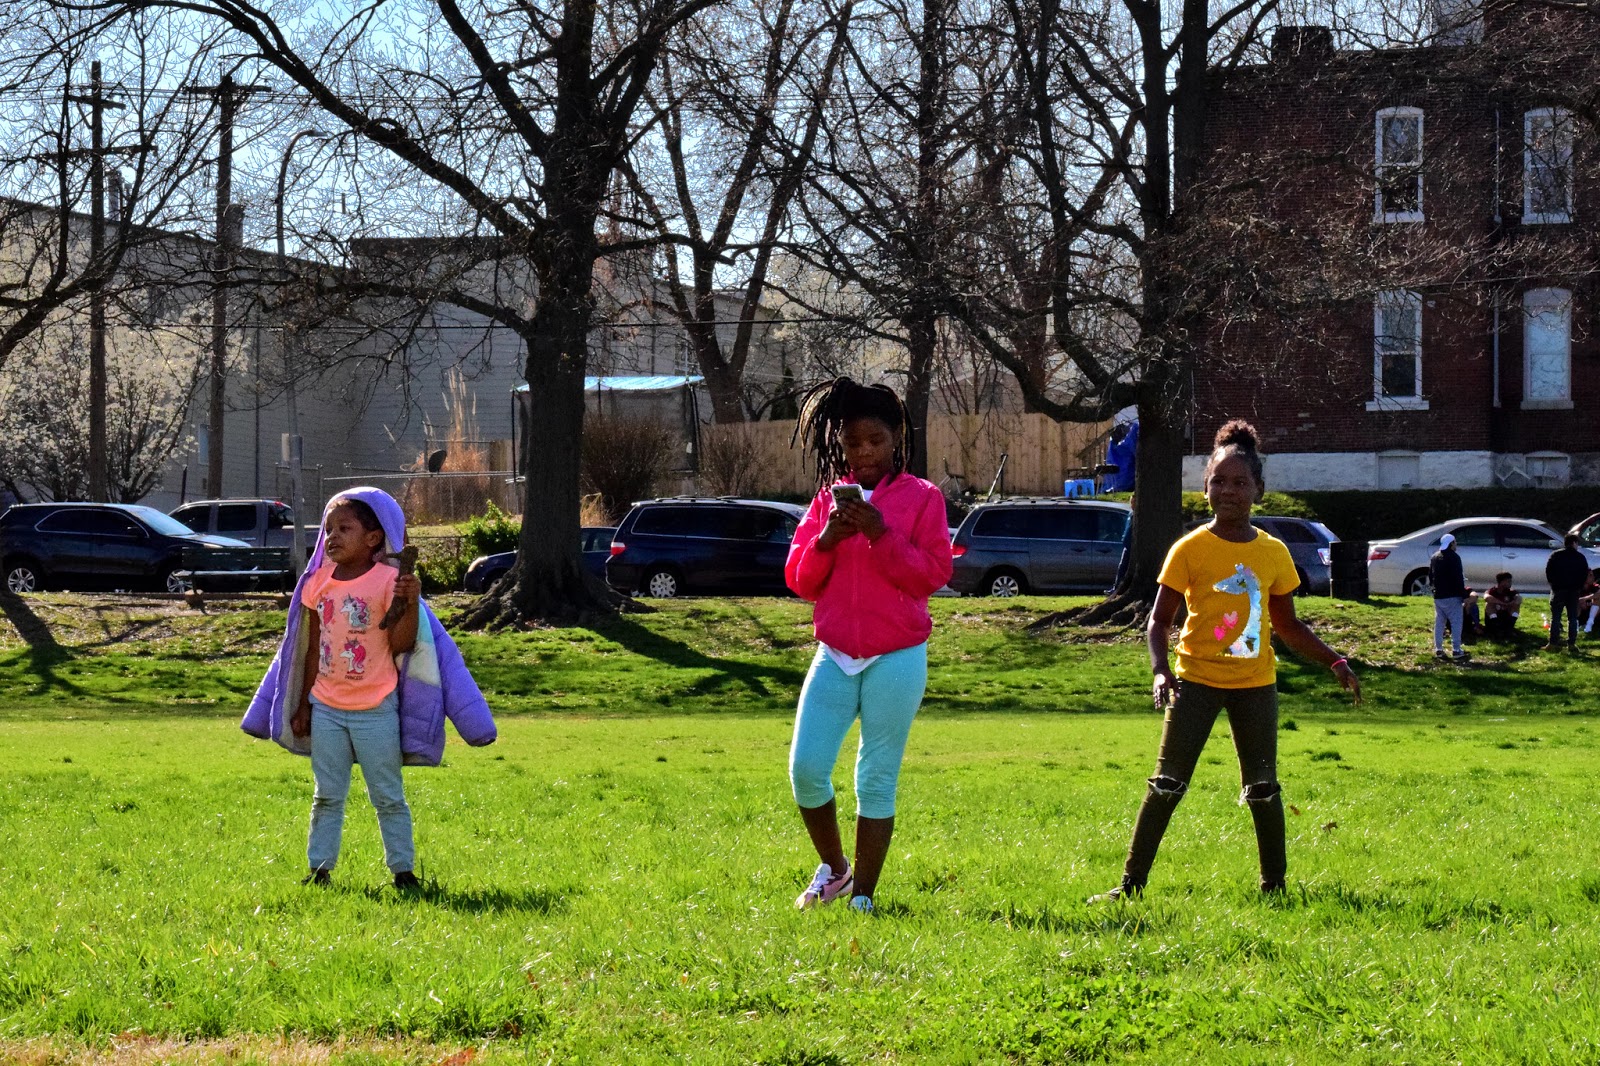 Children at Marquette Park in Dutchtown, St. Louis, MO.